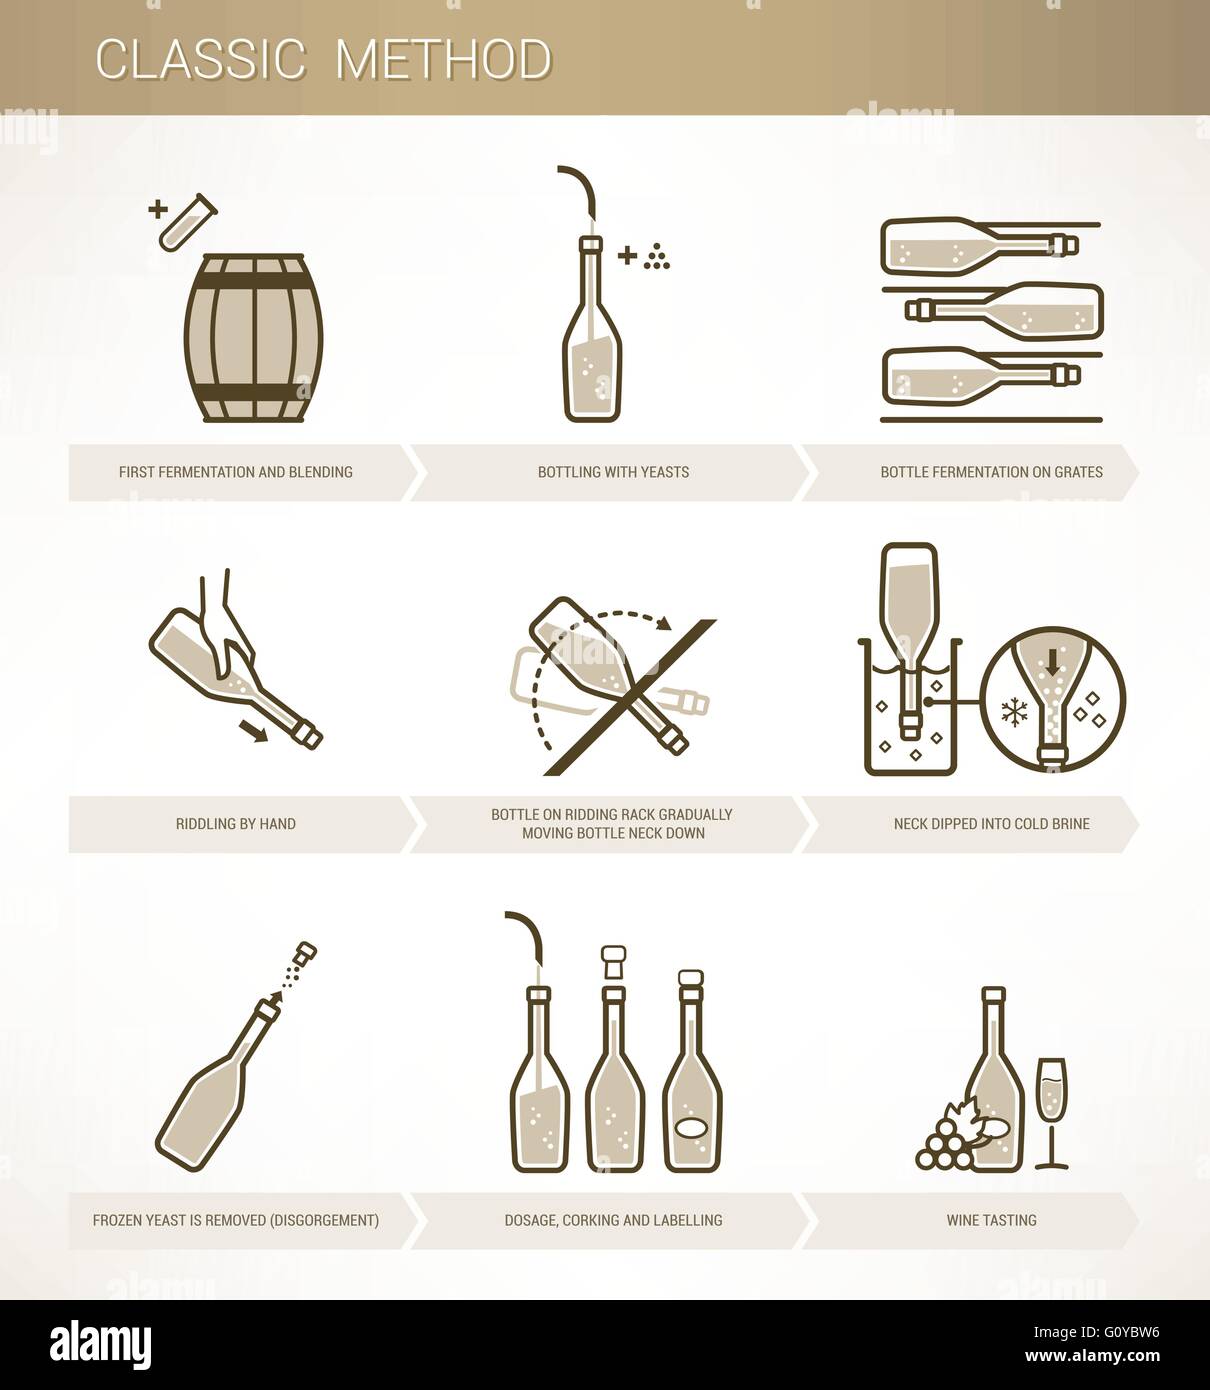 La méthode classique de vinification la fermentation du vin, de la procédure et mise en bouteille Illustration de Vecteur